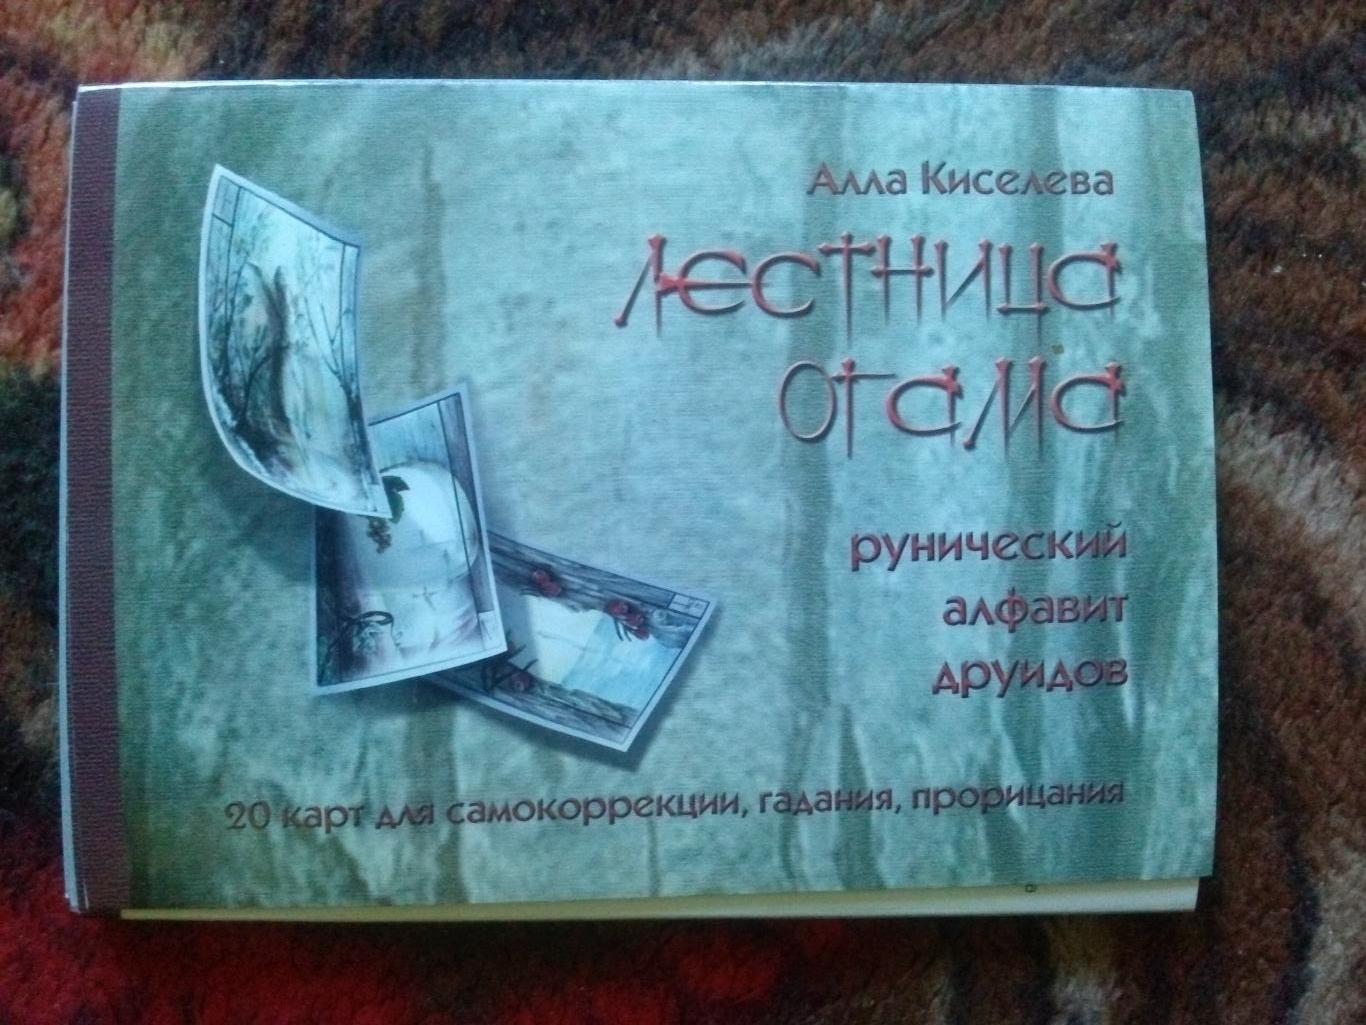 Алла Кисилева - Лестница Отама (2000-е годы) Рунический алфавит друидов (полный)